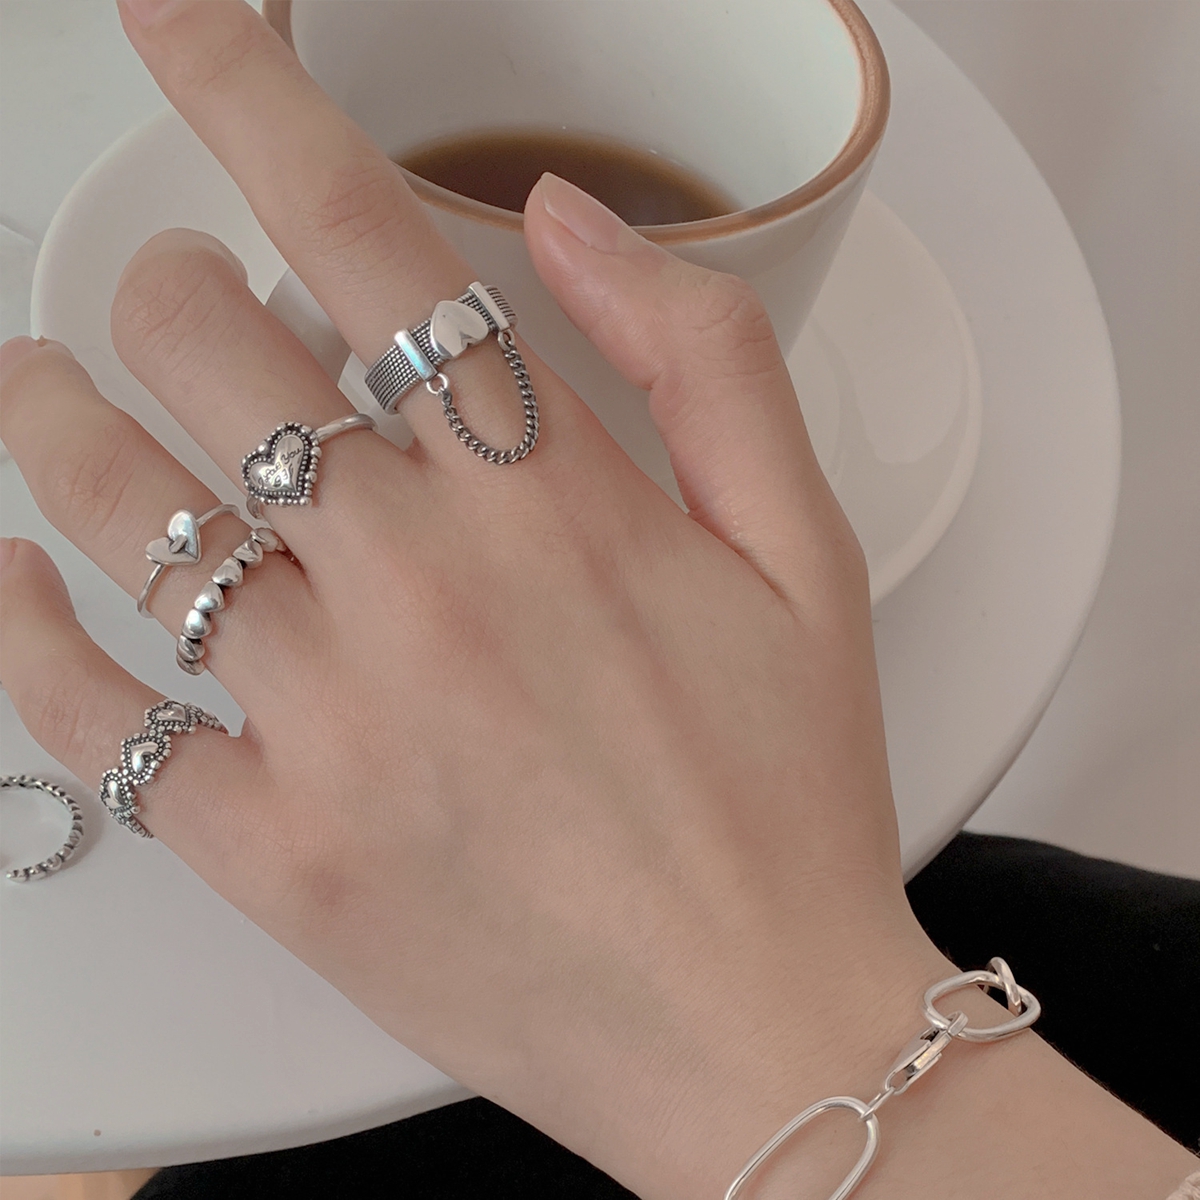 6 ensembles Punk chaîne poignet Bracelet anneaux pour femmes hommes charme Emo détachable anneau mode bijoux cadeau